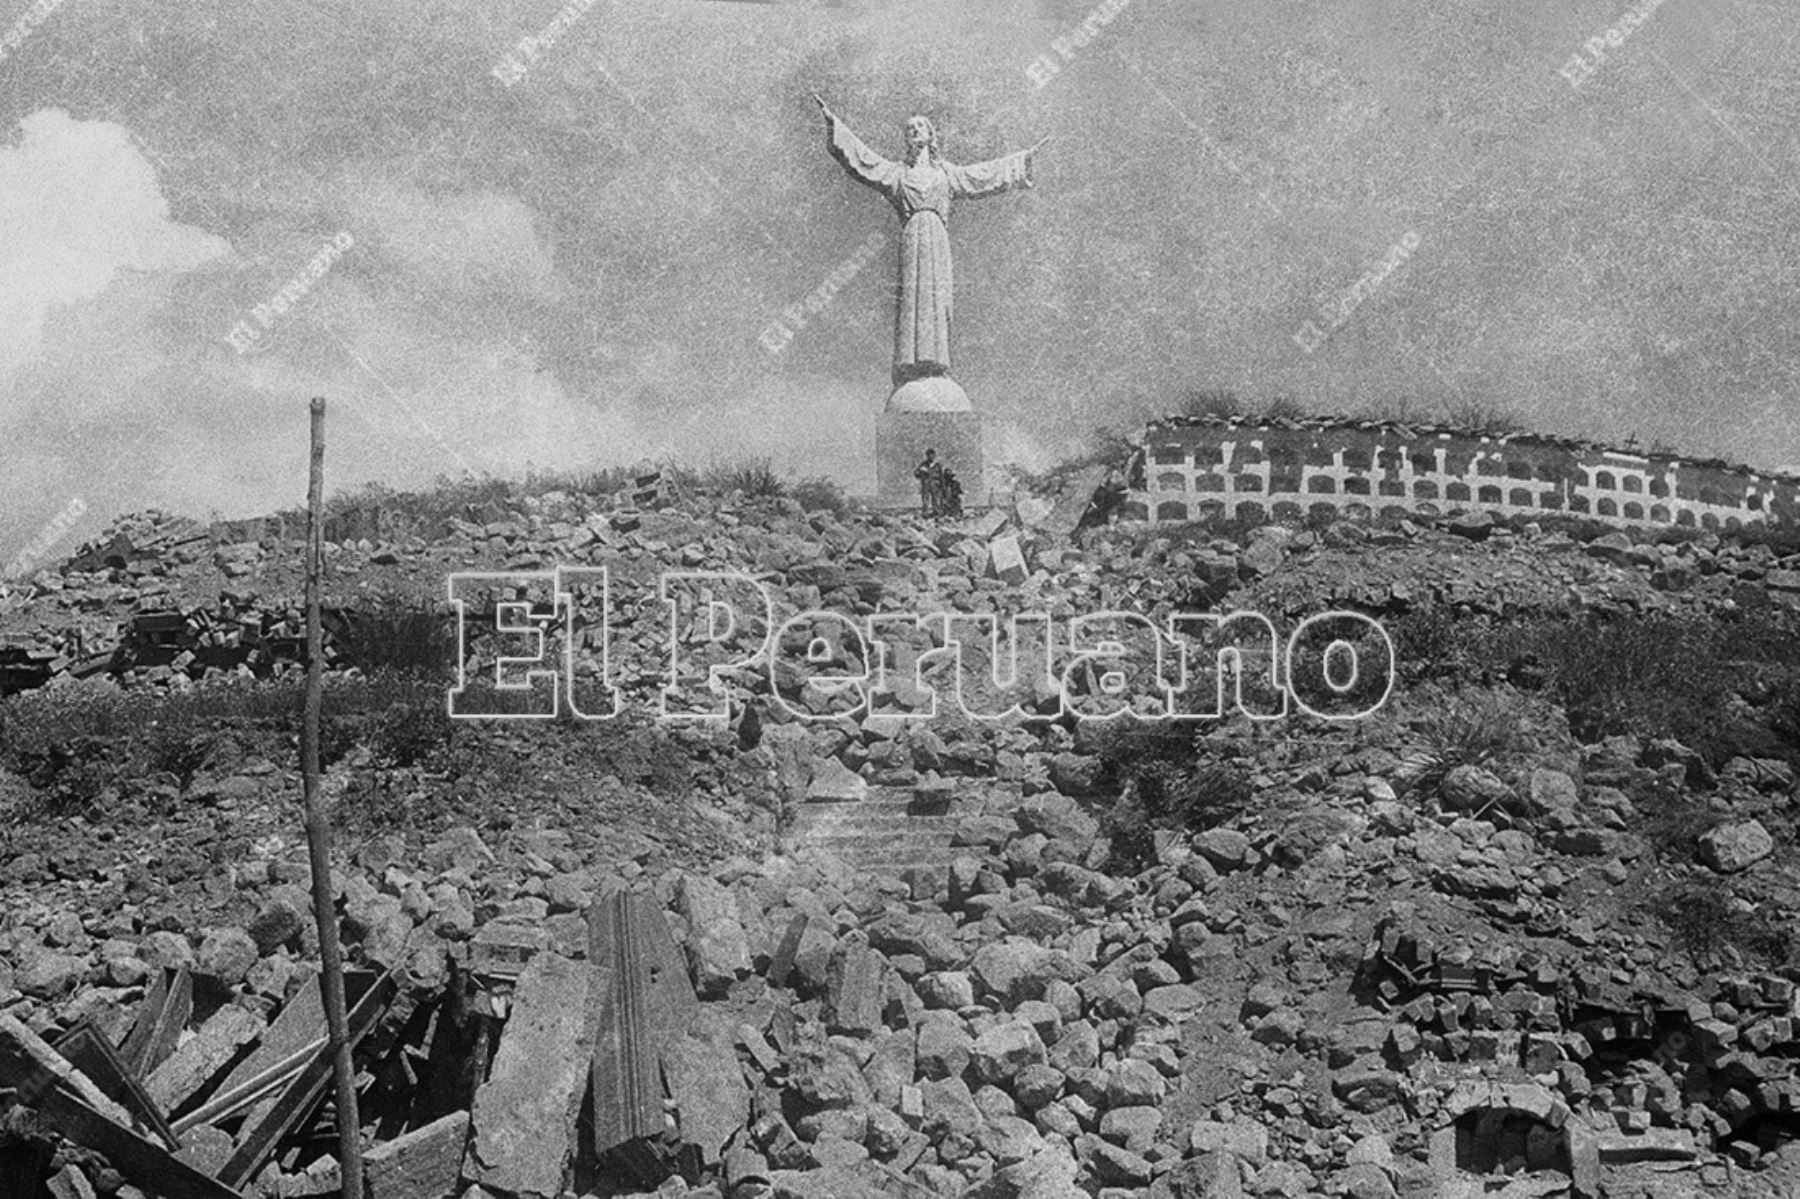 Se cumplen 54 años del terremoto de 1970, considerada una de las peores tragedias que vivió el Perú. Después del violento sismo sucedió un aluvión que sepultó el pueblo de Yungay, en Áncash. ANDINA/archivo